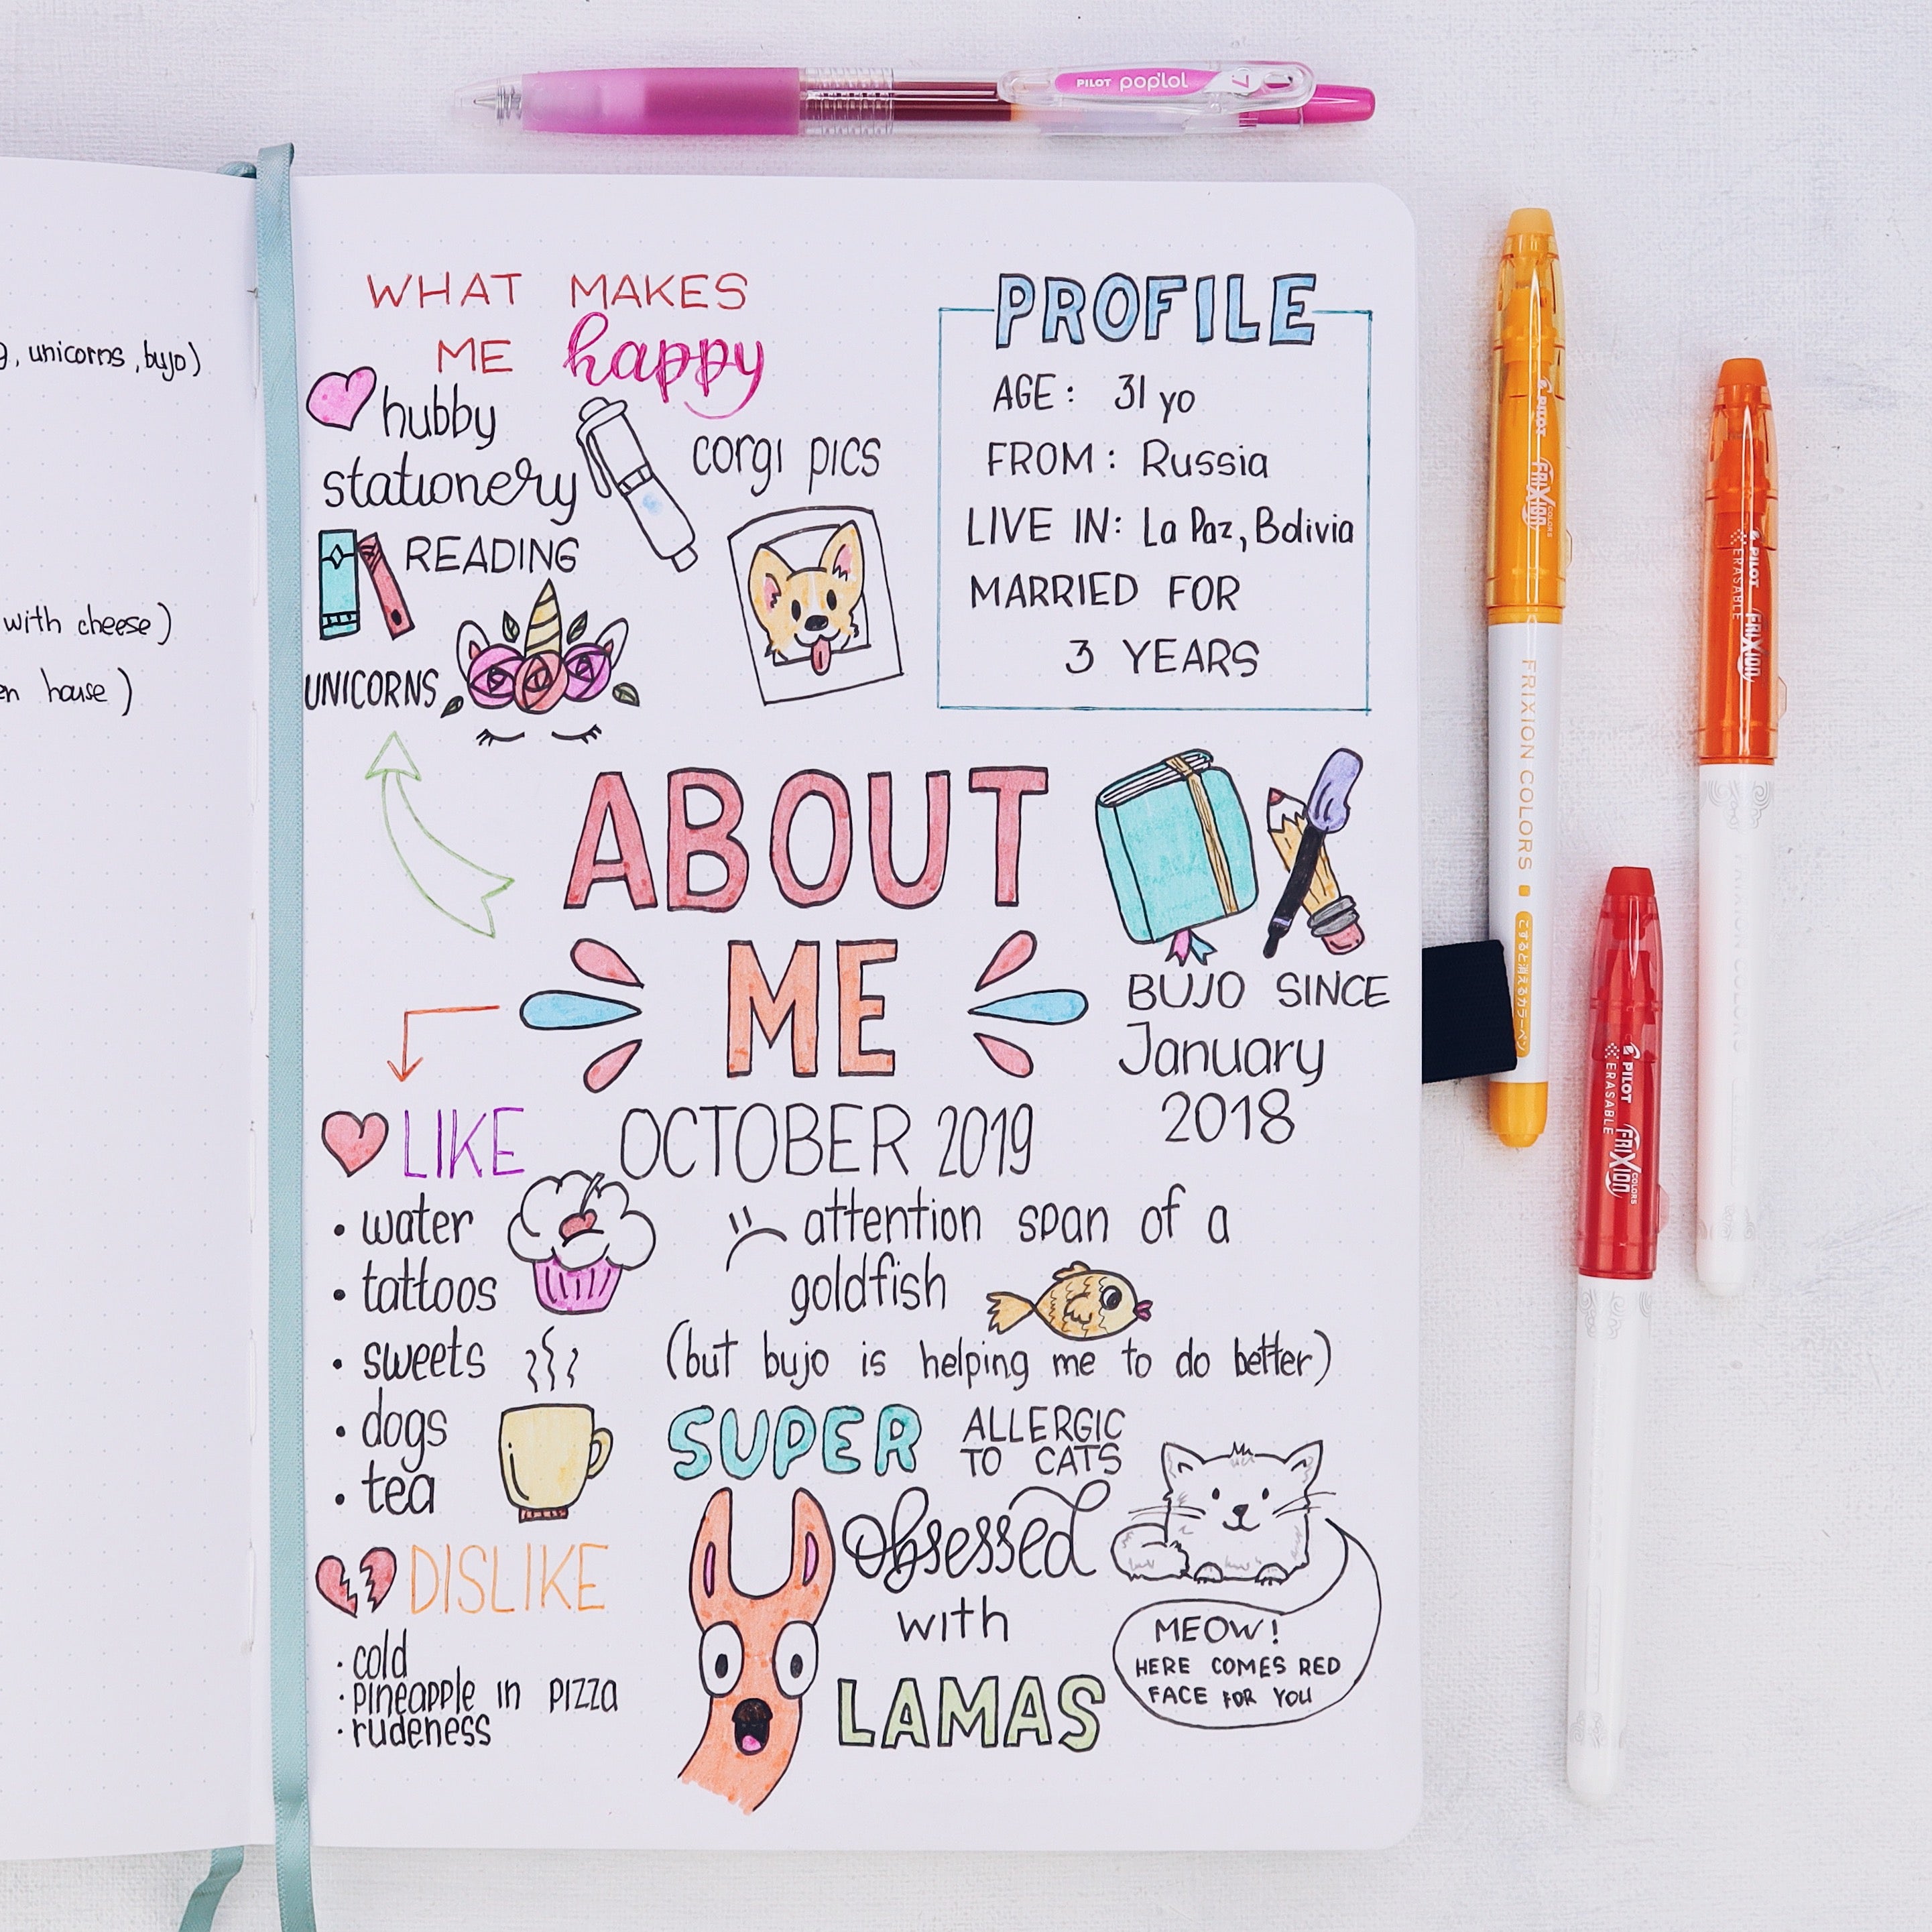 Creative Dot Journaling Kit